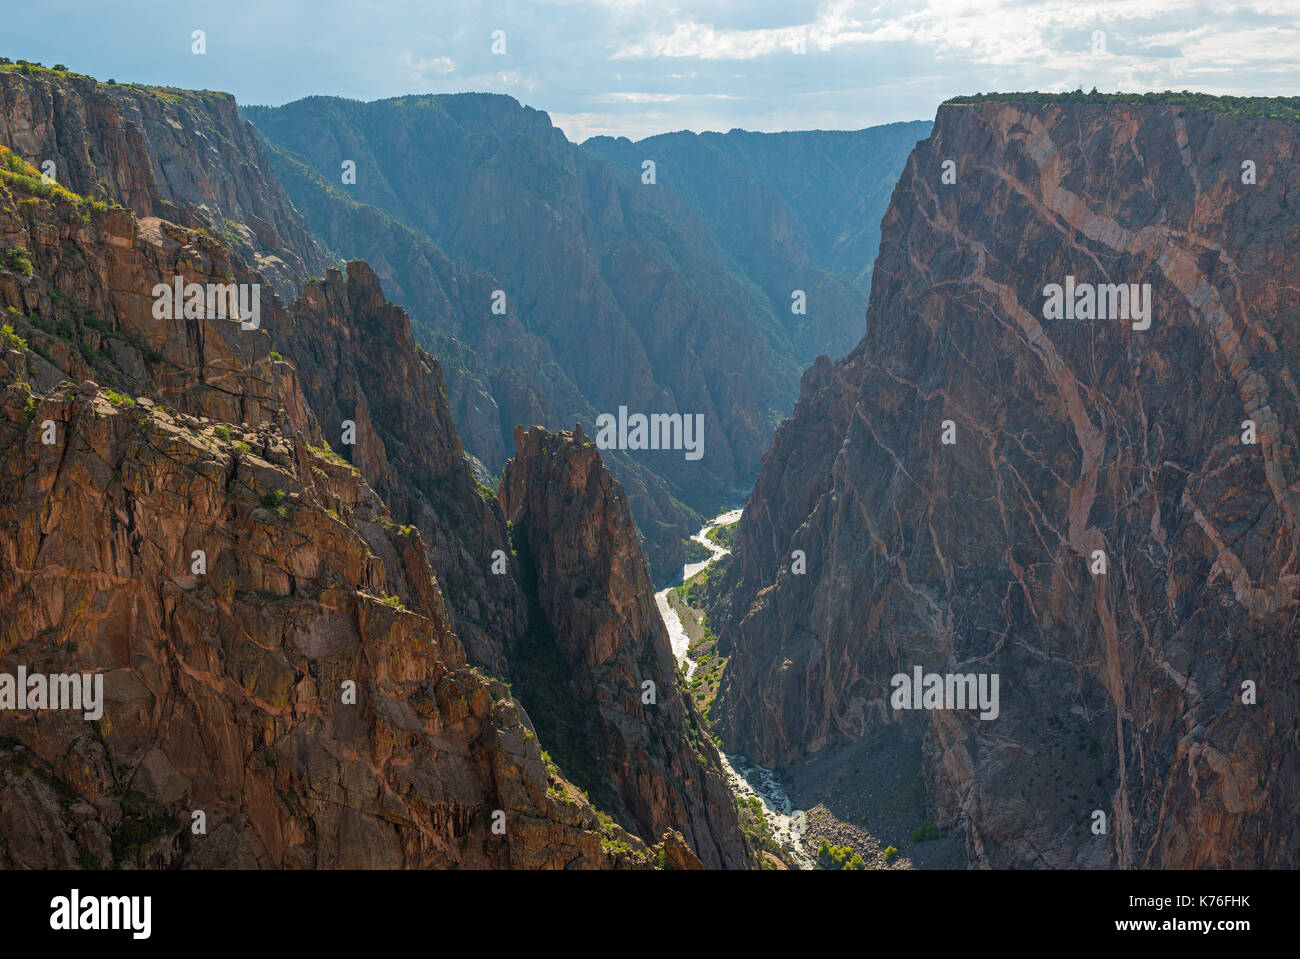 Le scogliere di granito del Black Canyon del Gunnison con i due draghi e il misterioso fiume Gunnison taglio attraverso la roccia, Colorado, Stati Uniti d'America. Foto Stock